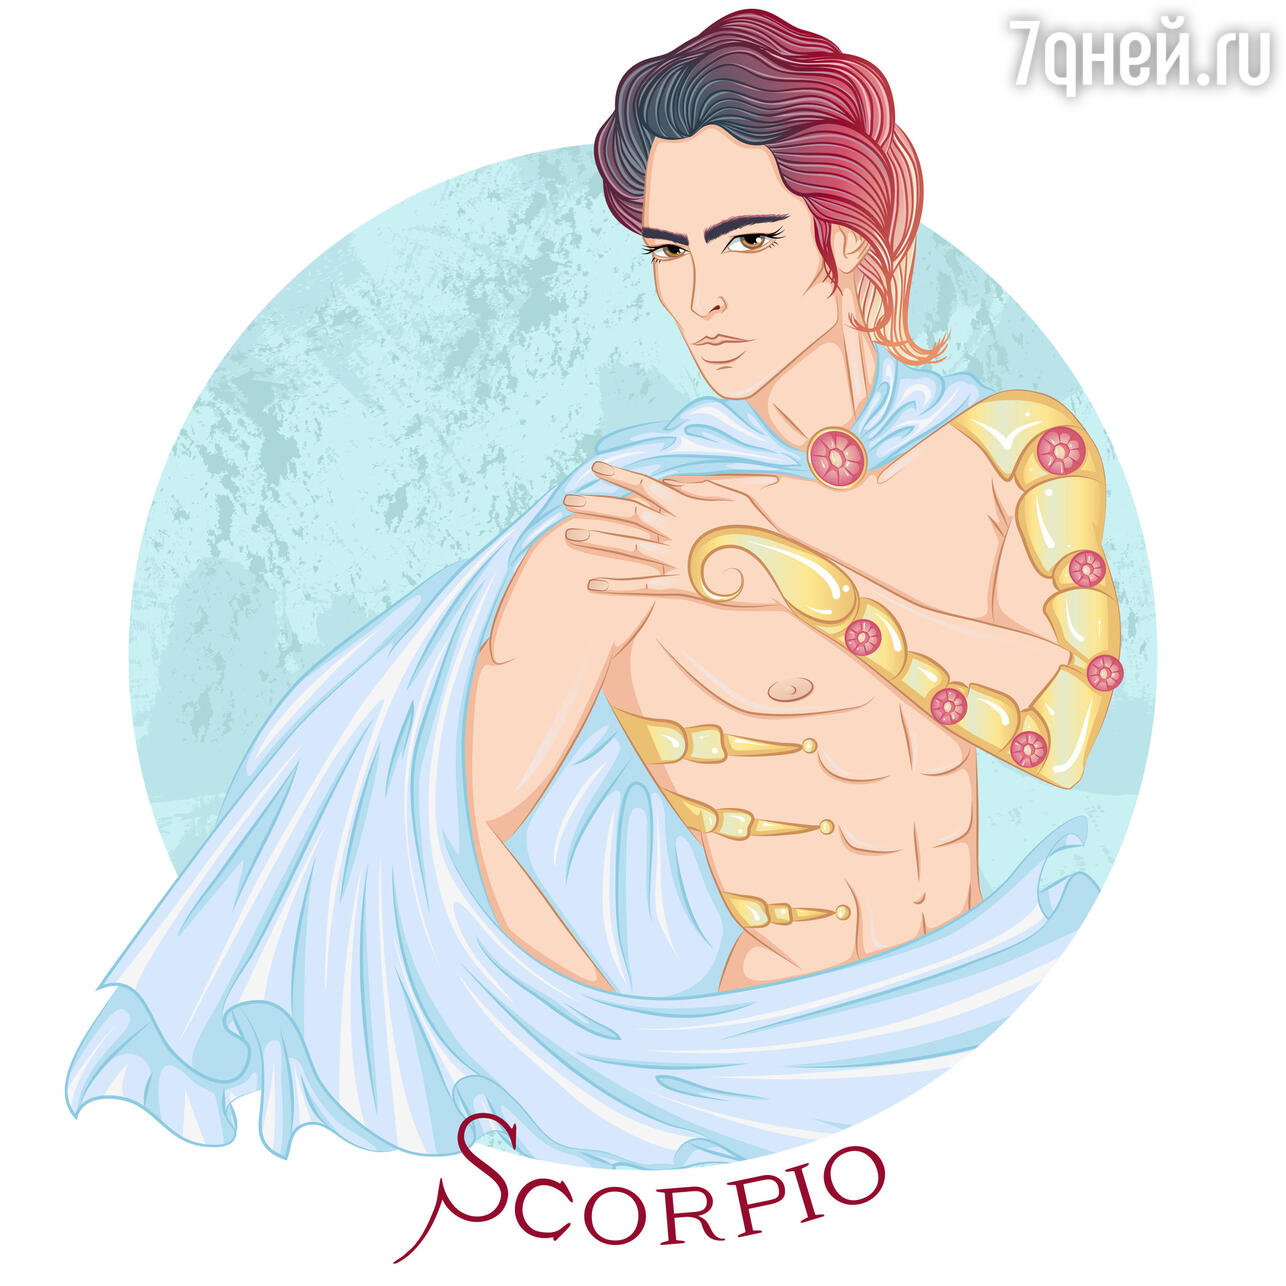 Скорпион — любовный гороскоп на сегодня